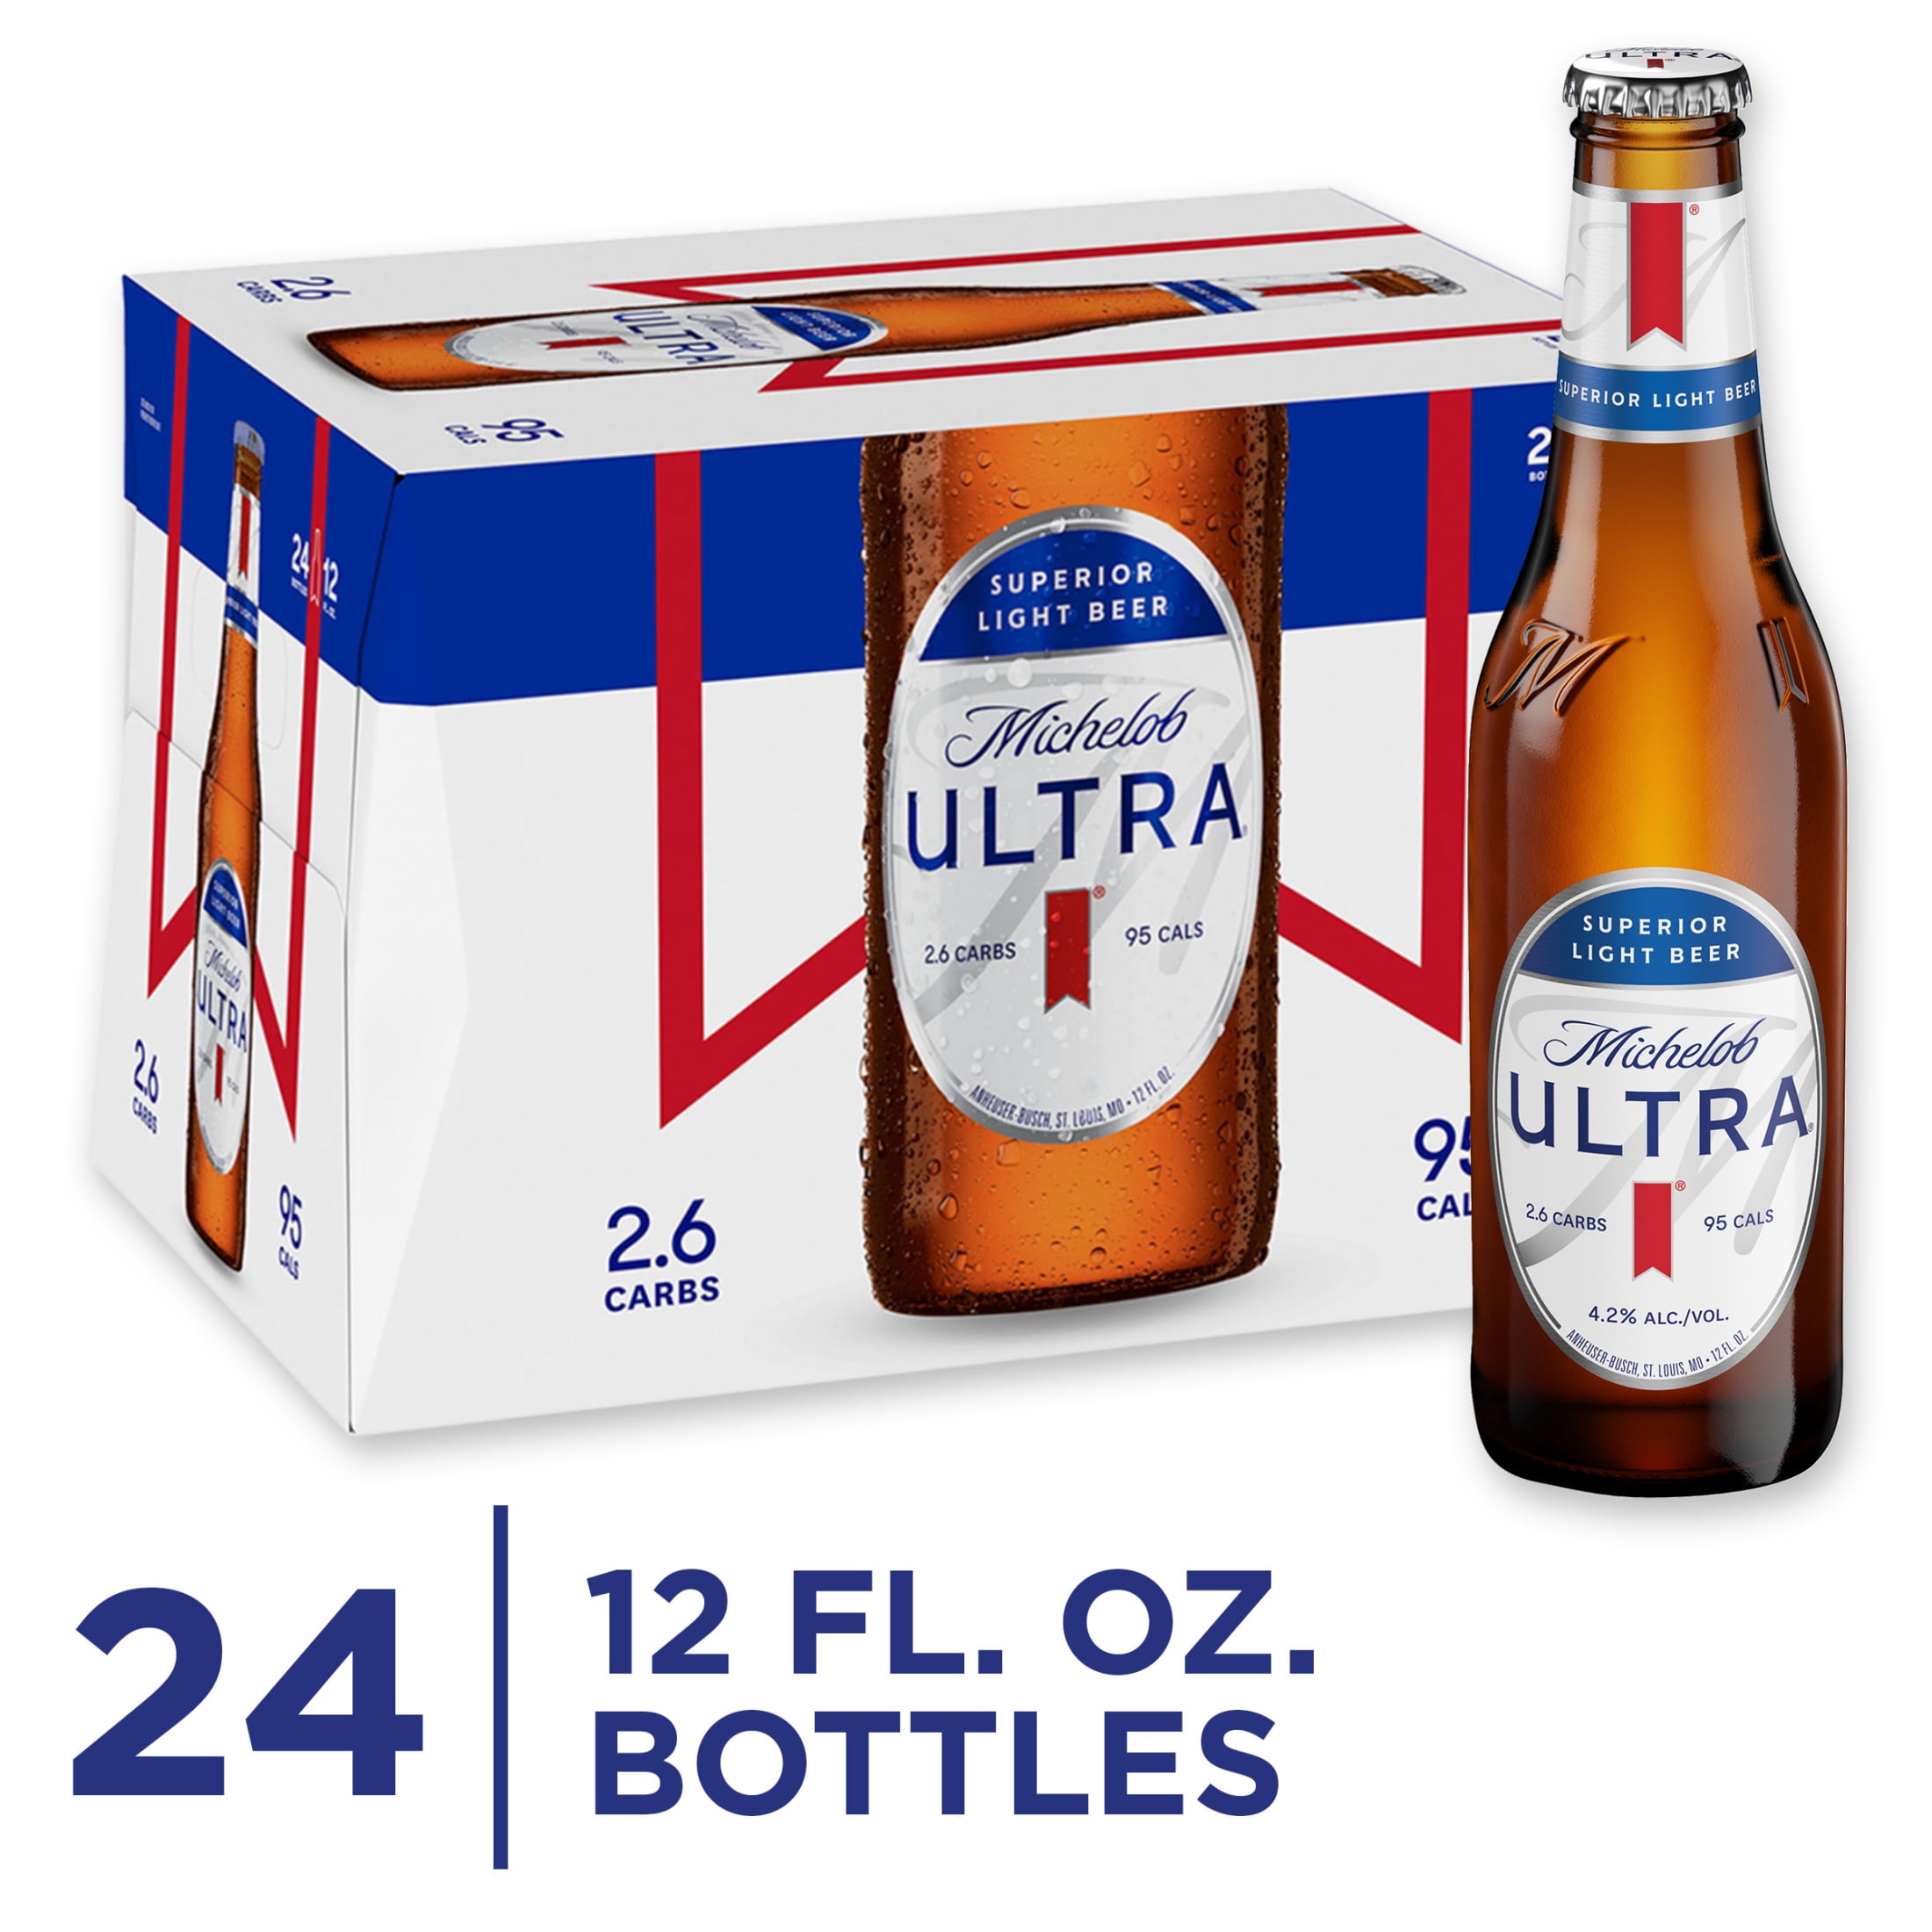 buy-michelob-ultra-light-beer-24-pack-beer-12-fl-oz-bottles-4-2-abv